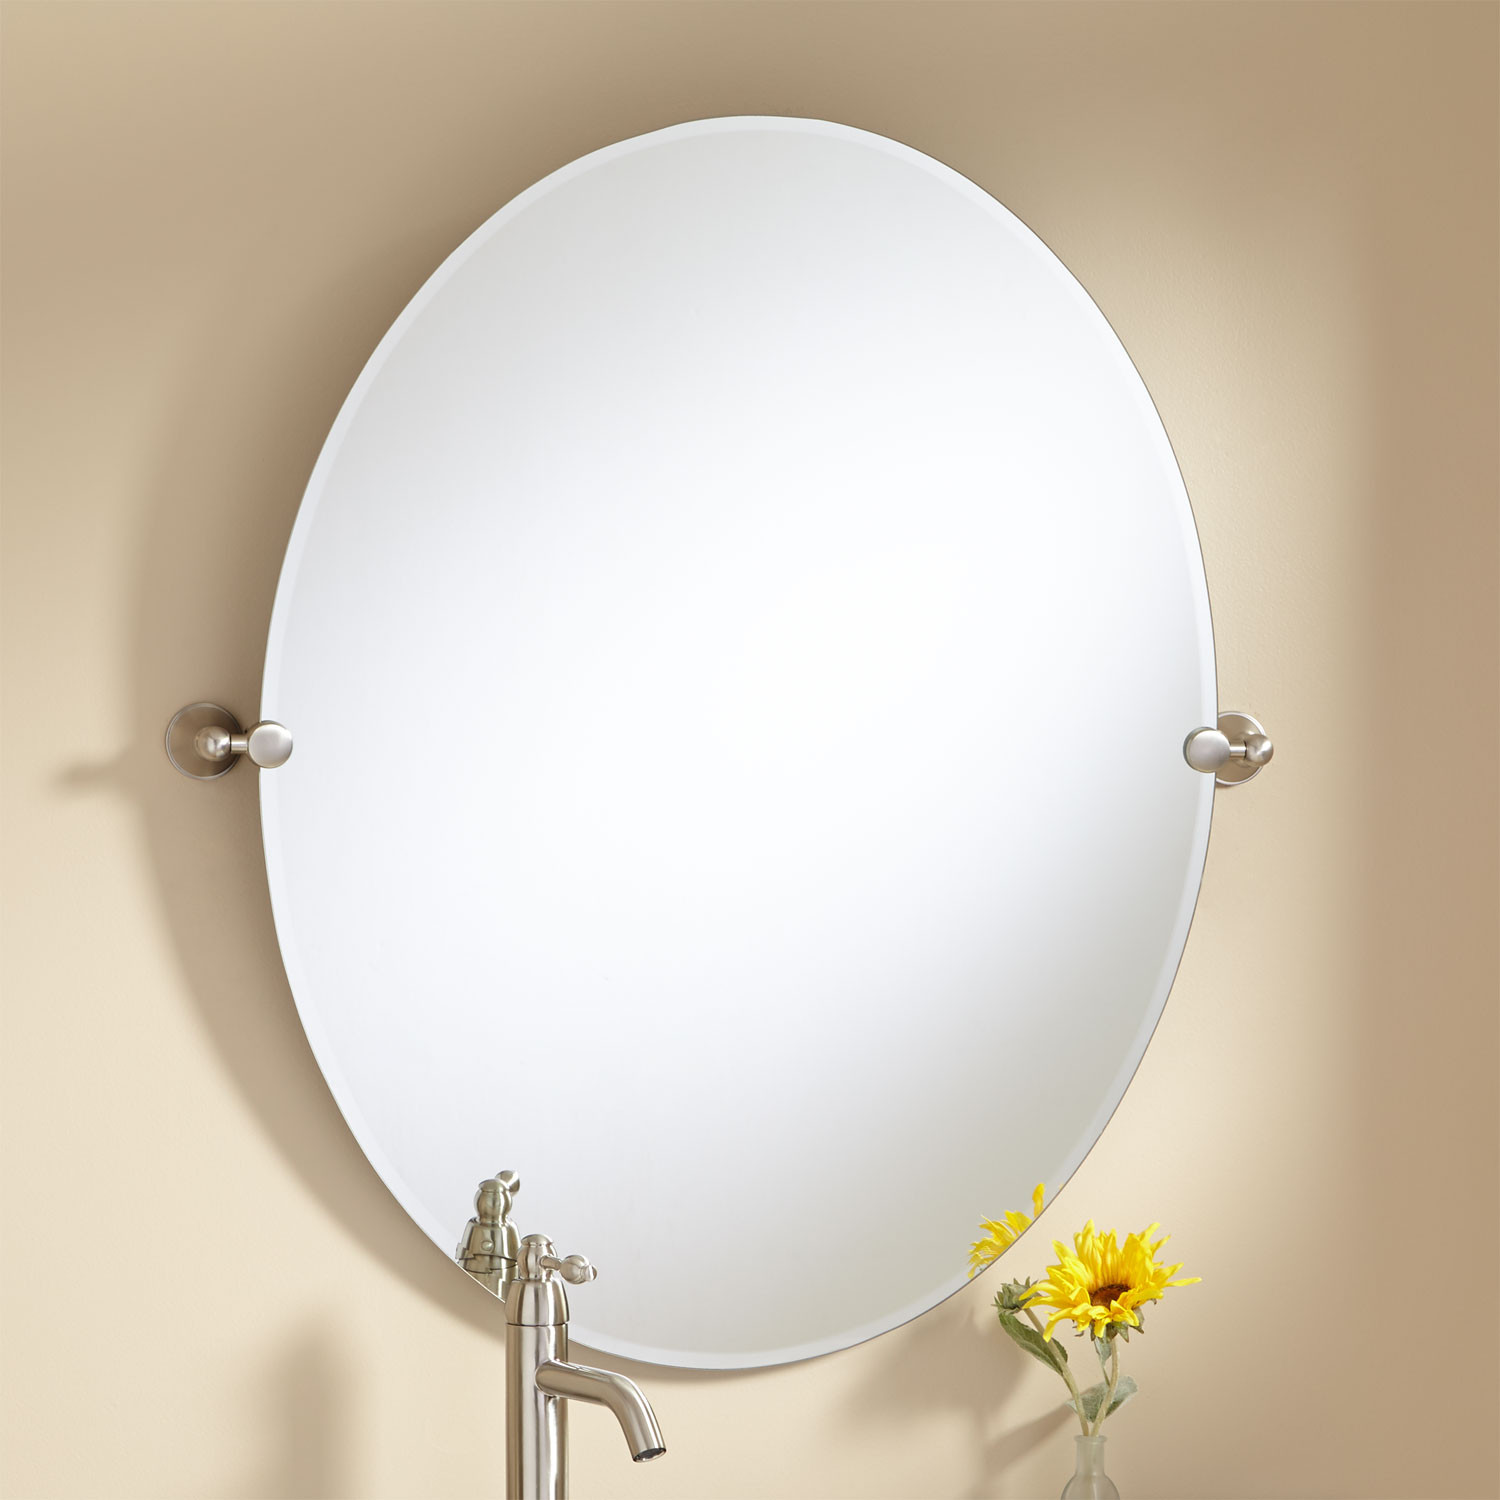 Oval Bathroom Mirror
 Oval Vanity Mirror Espresso Bathroom